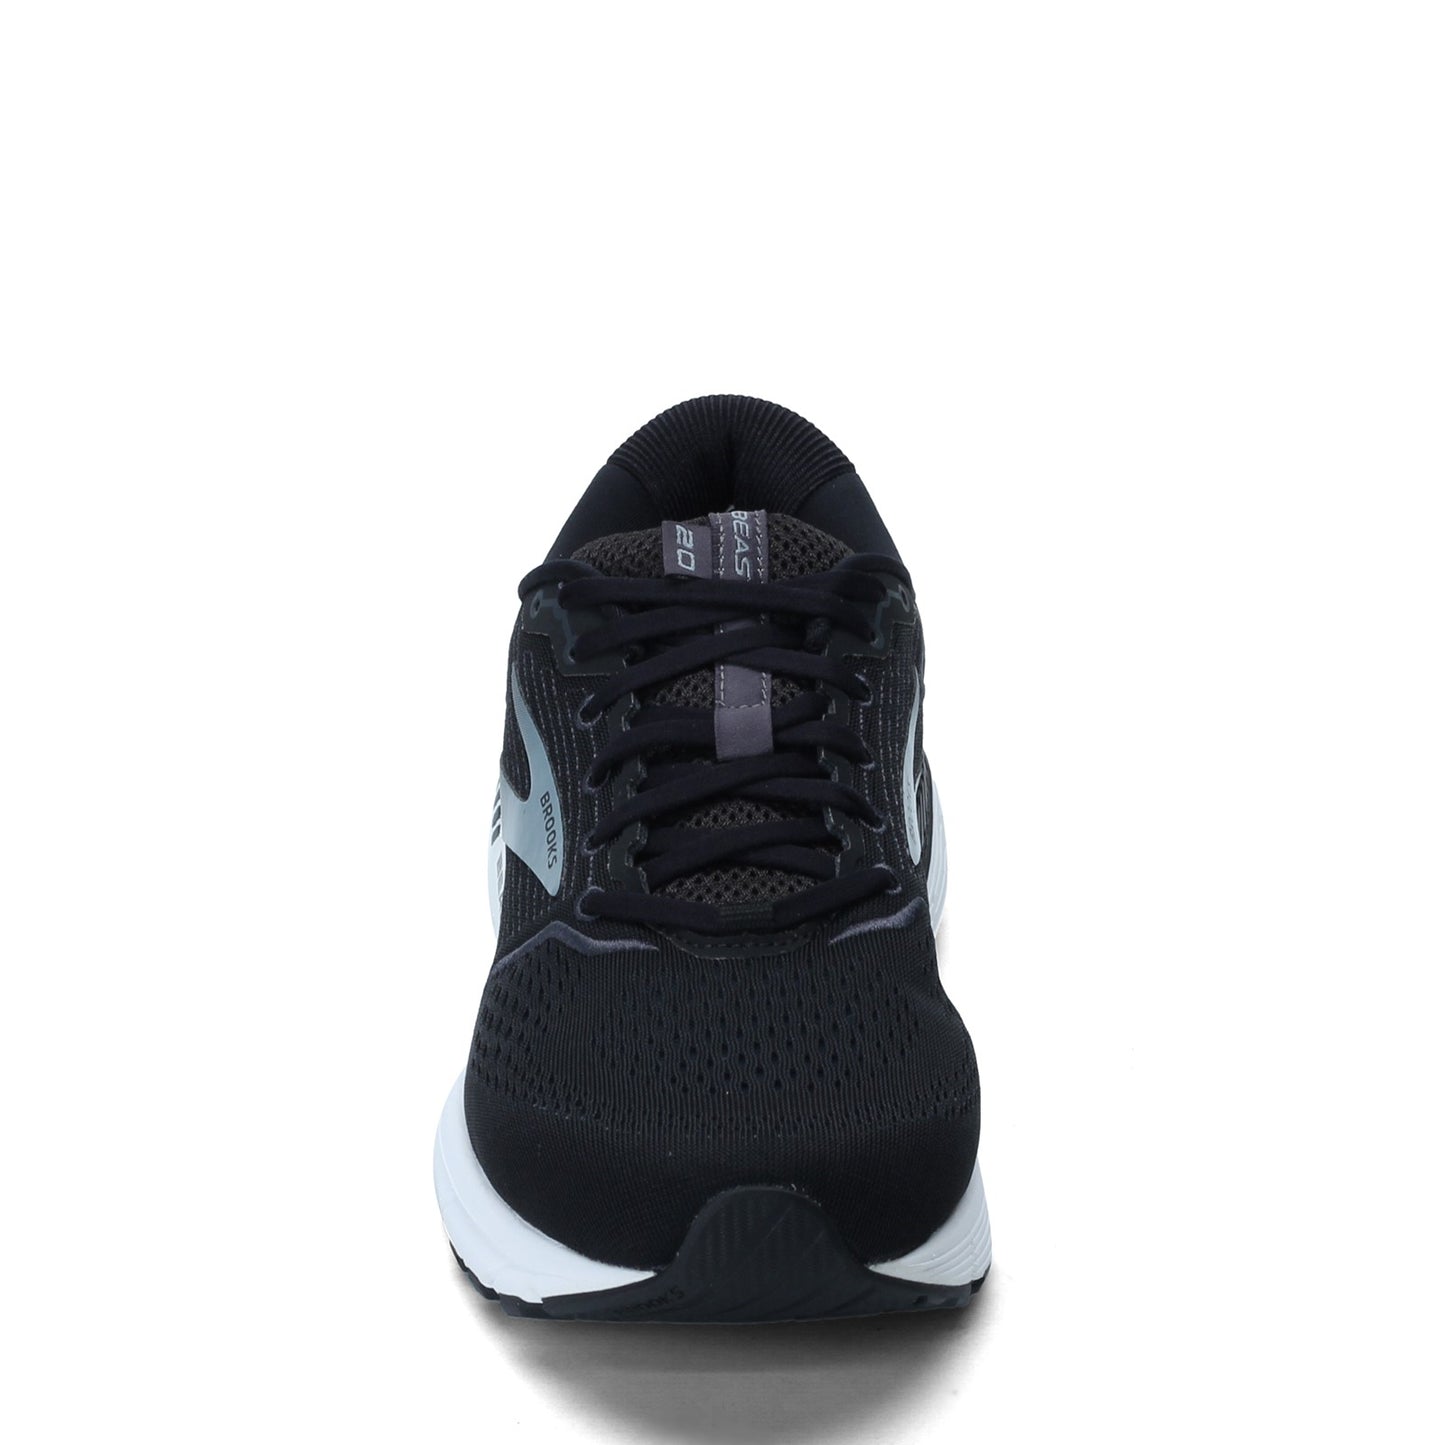 Peltz Shoes  Men's Brooks Beast 20 Running Shoe - Extra Wide Width Black/Ebony 110327 4E 051